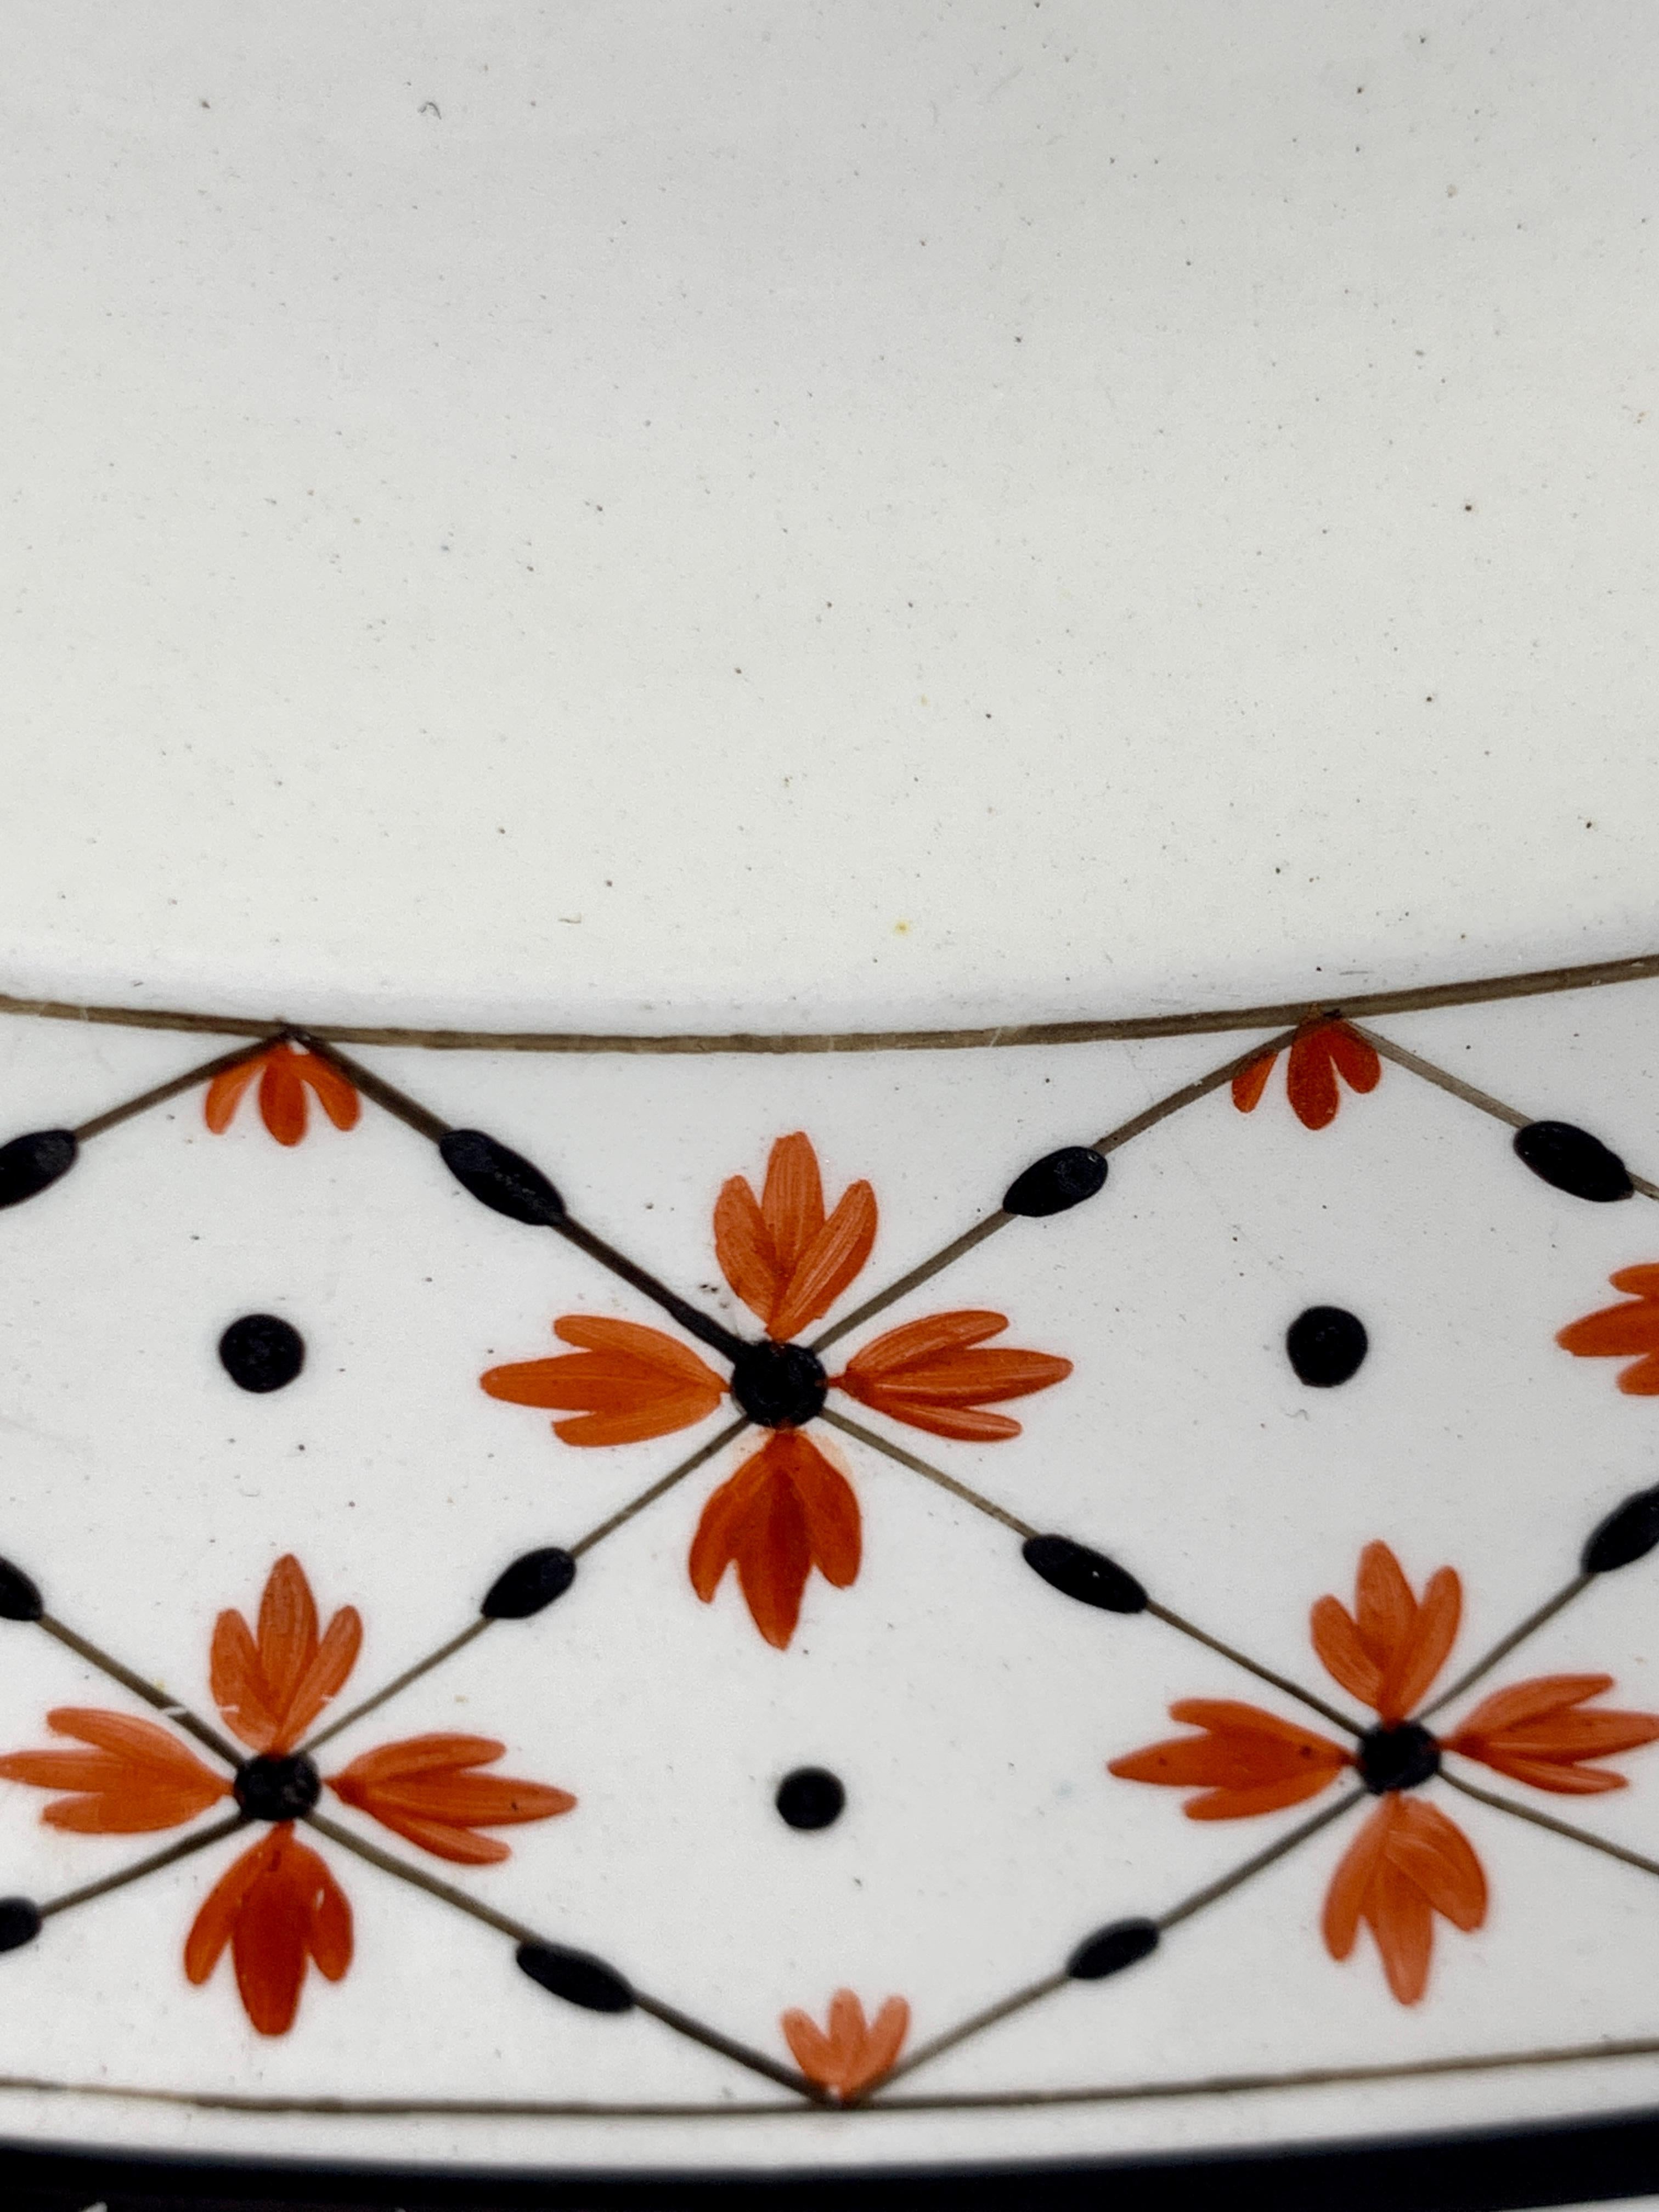 Ce plat rond ou chargeur en creamware de Wedgwood a été fabriqué au XVIIIe siècle en Angleterre, vers 1785.
La bordure est décorée d'un motif néoclassique traditionnel de têtes de fleurs rouge fer reliées par des 